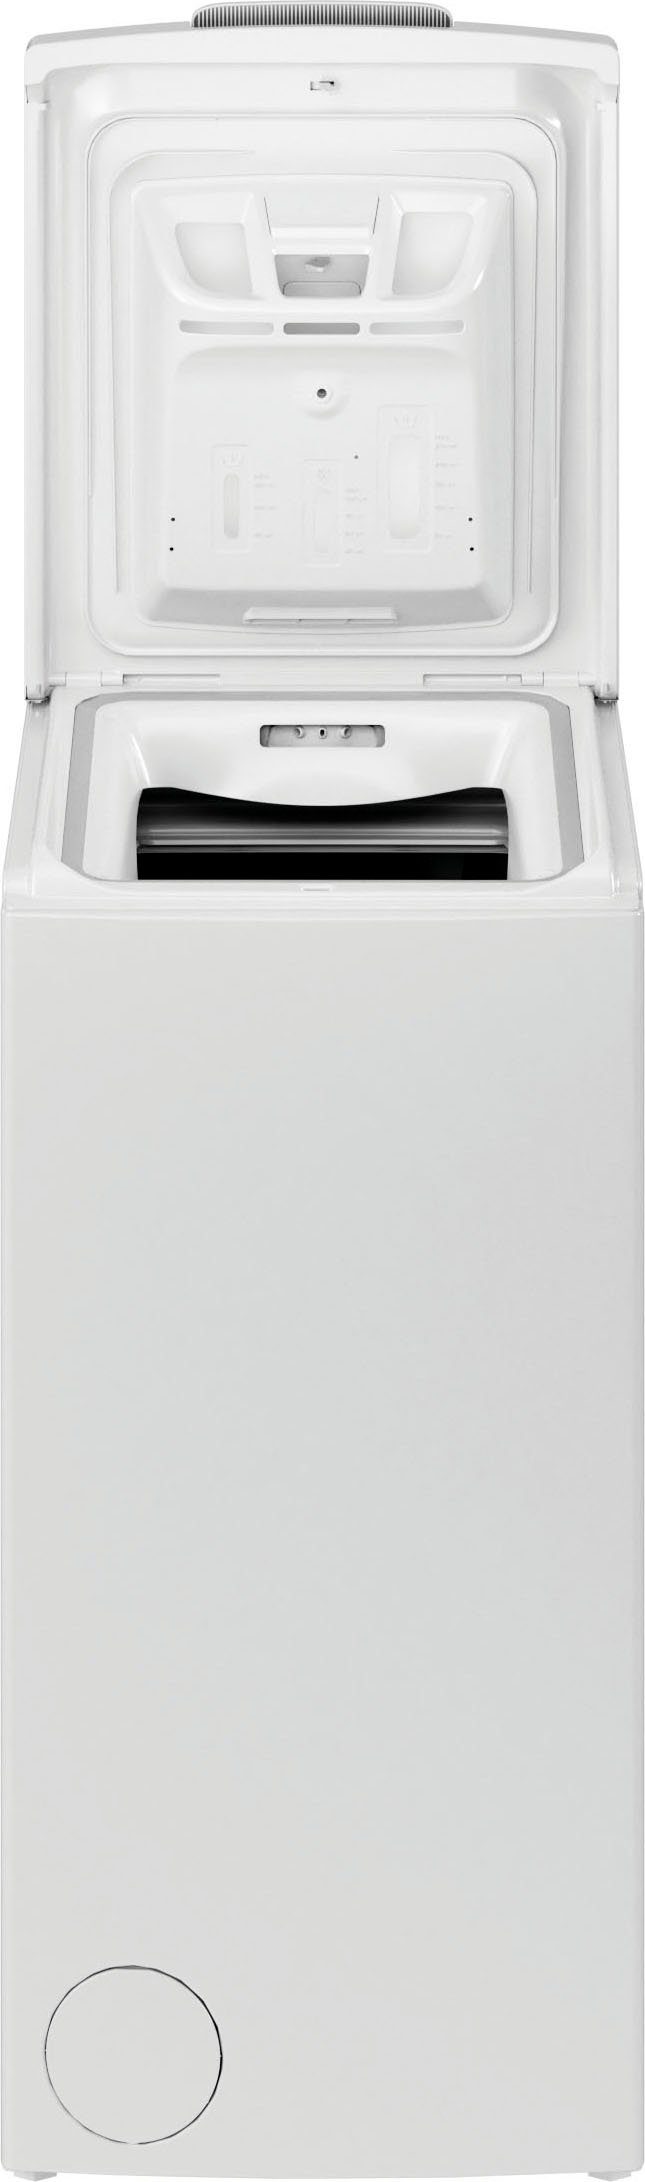 Toplader Privileg 6 Waschmaschine kg, U/min C 1200 S6245E, PWT